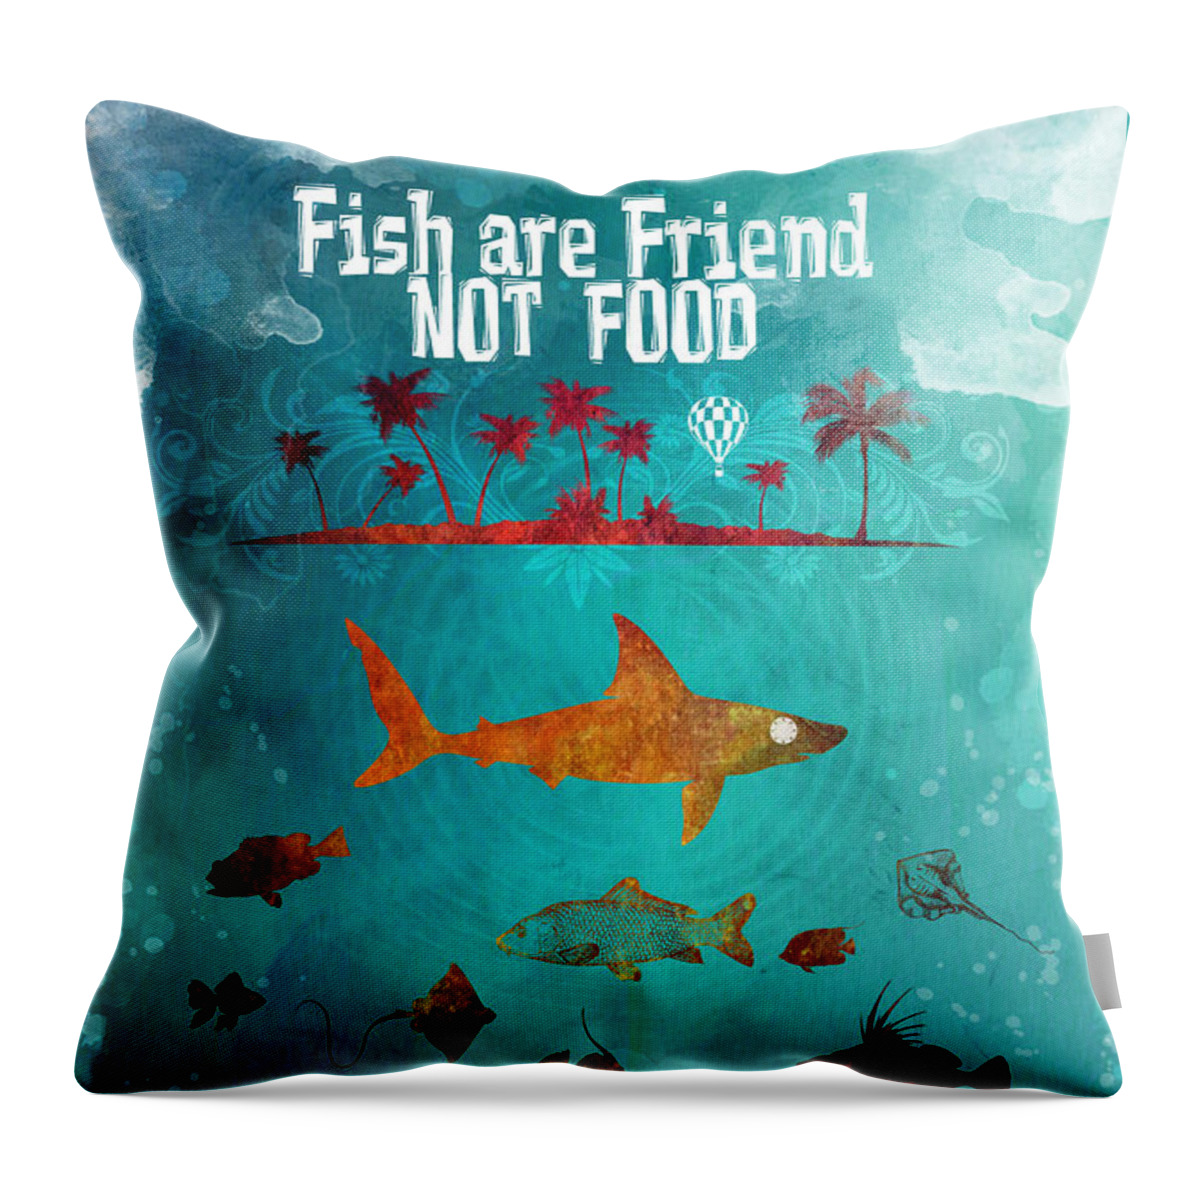 Fish Are Friend Not Food Throw Pillow featuring the digital art Fish are friend not food poker by Justyna Jaszke JBJart